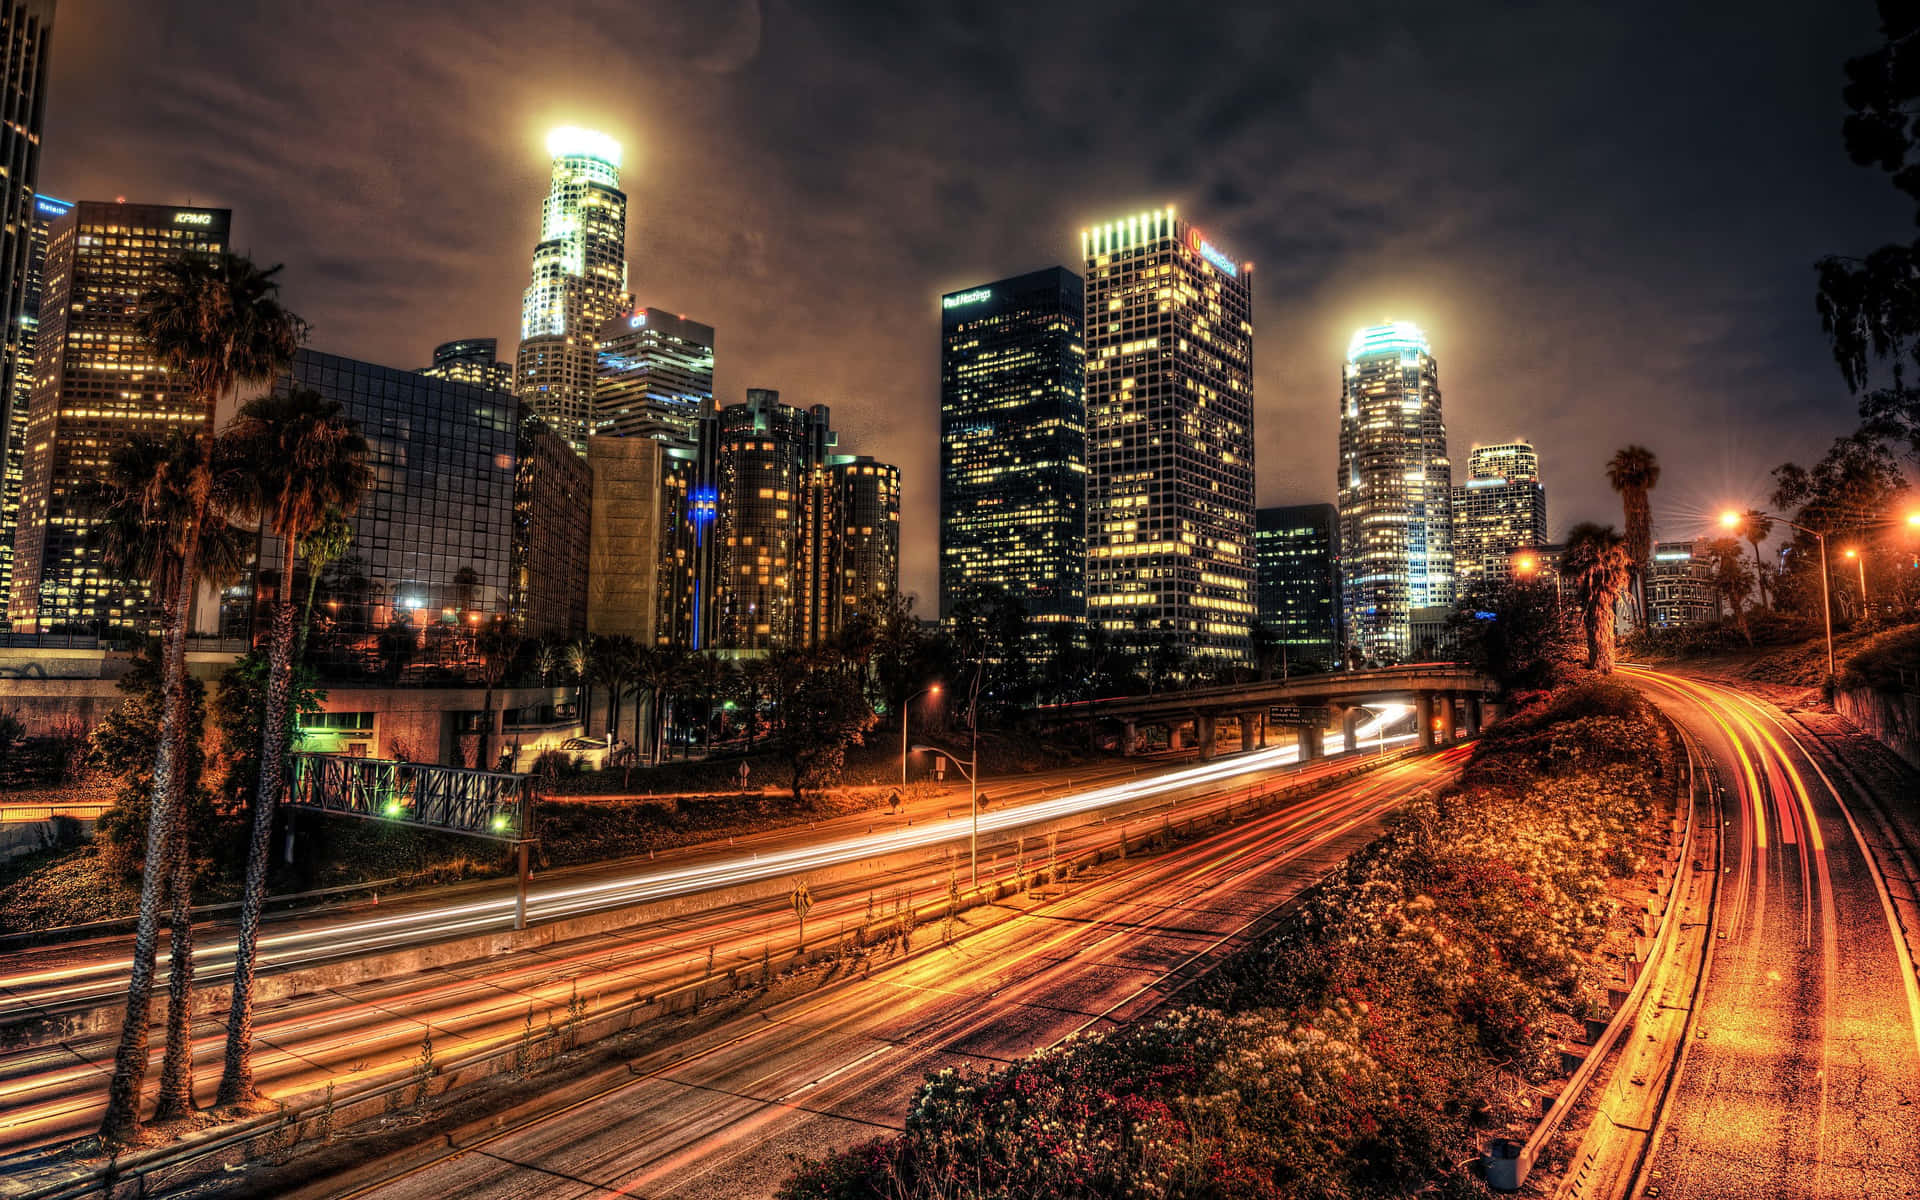 Unavista Mozzafiato Dell'orizzonte Di Los Angeles Di Notte Con Edifici E Strade Illuminate.